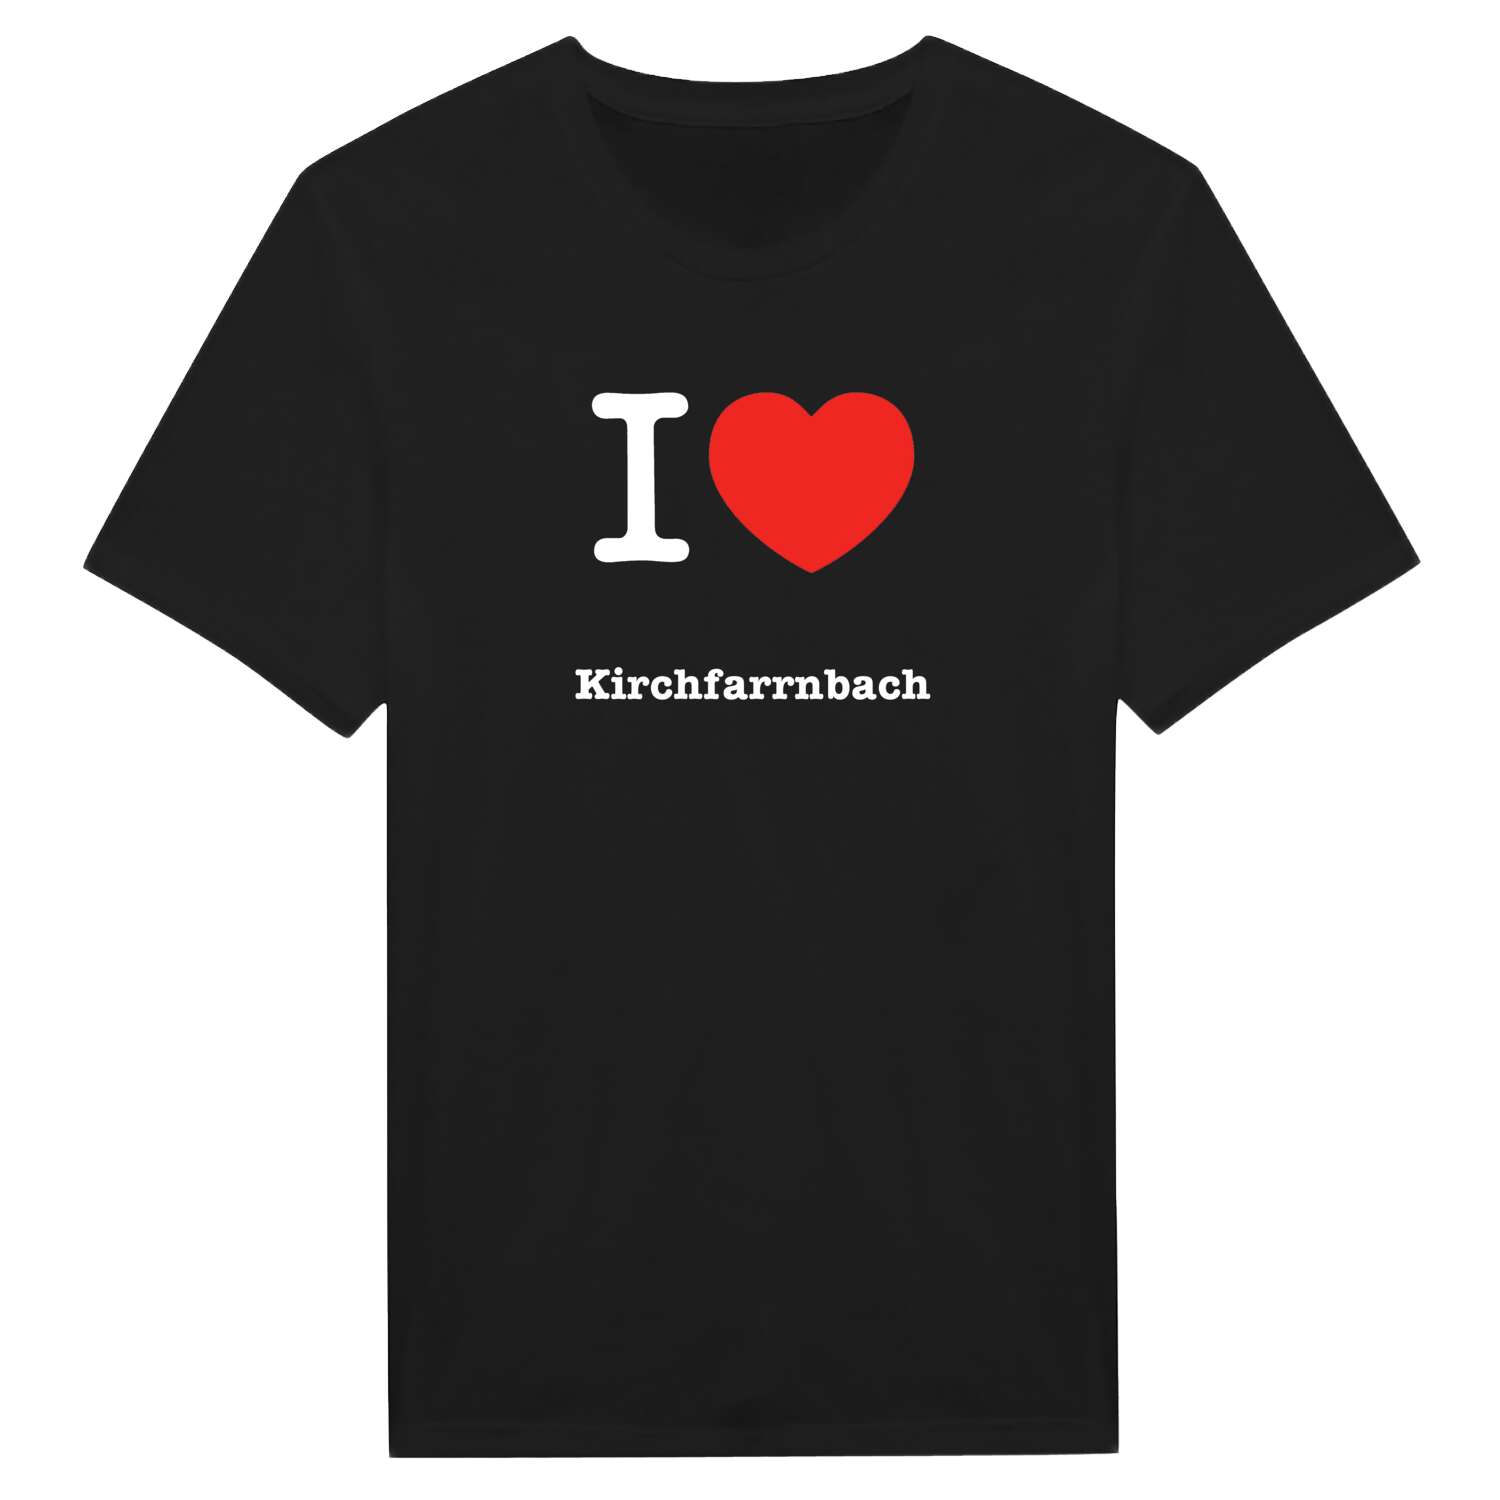 Kirchfarrnbach T-Shirt »I love«